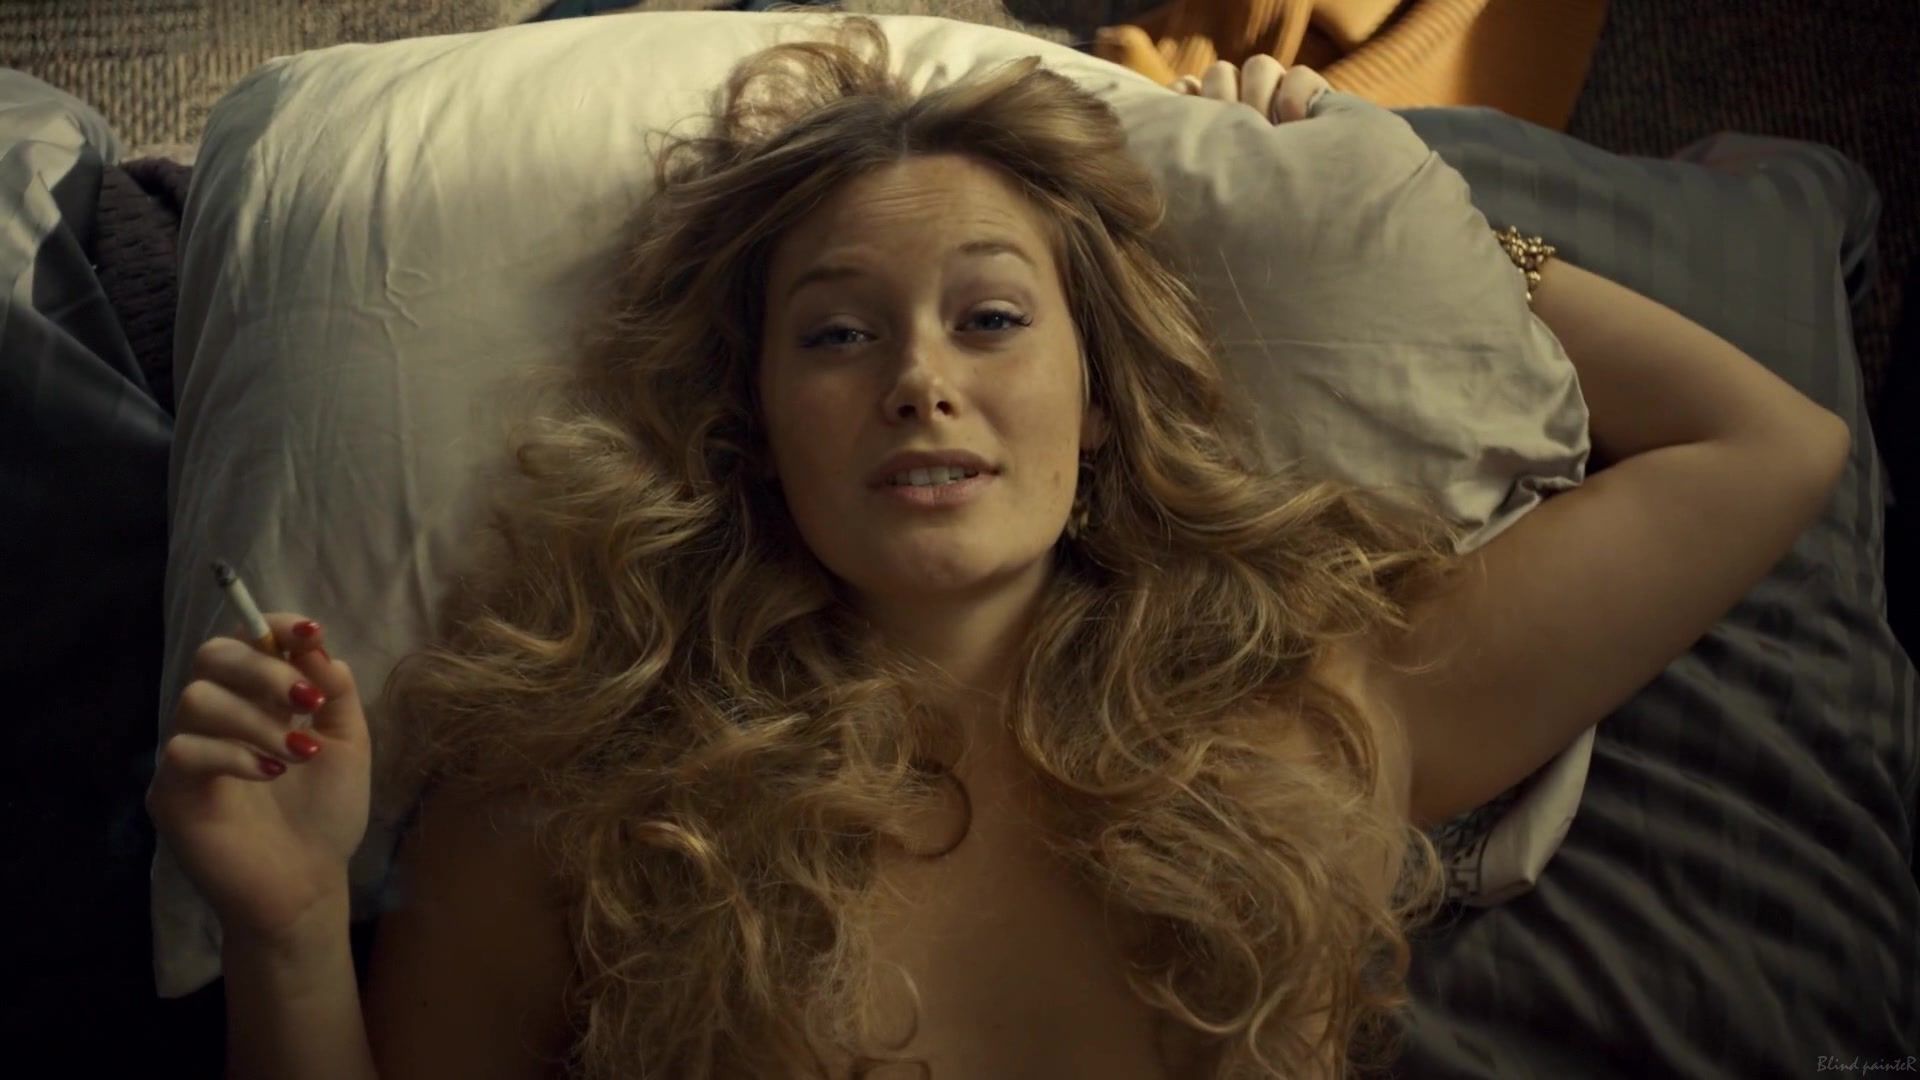 Dorm Rachel Keller naked - Fargo S02E04 (2015) Family Roleplay - 2